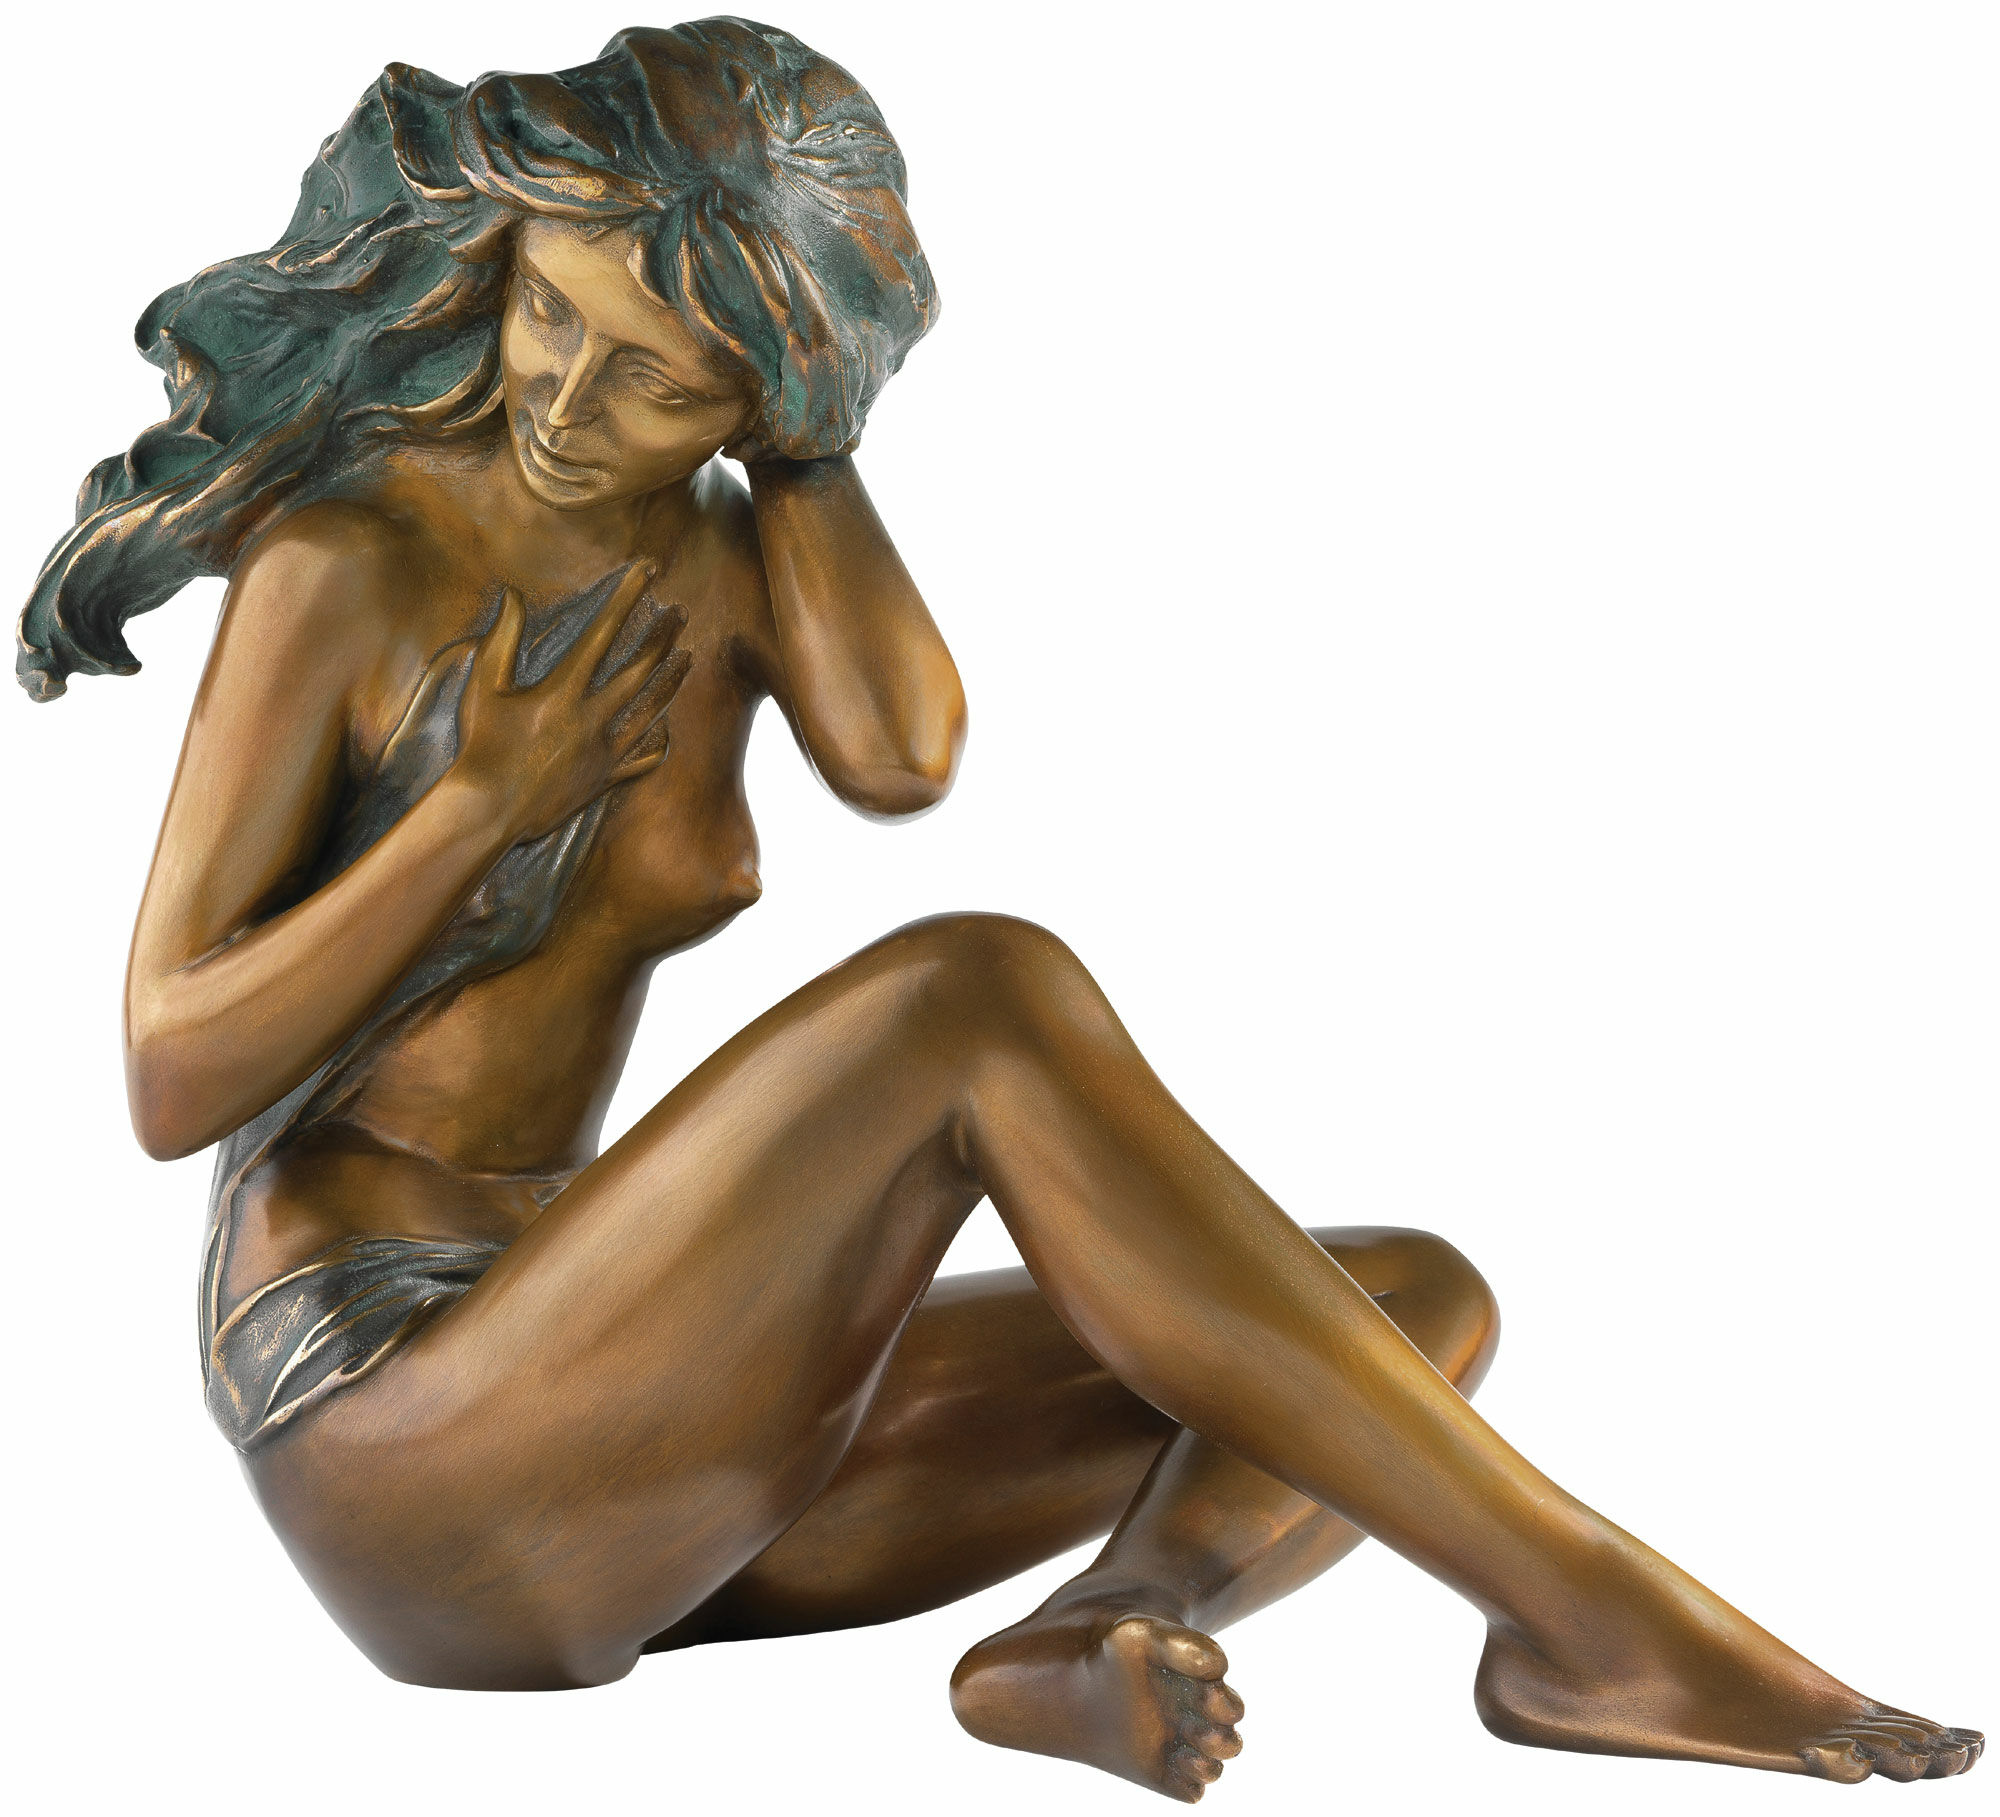 Sculpture "At Dawn", bronze by Erwin A. Schinzel